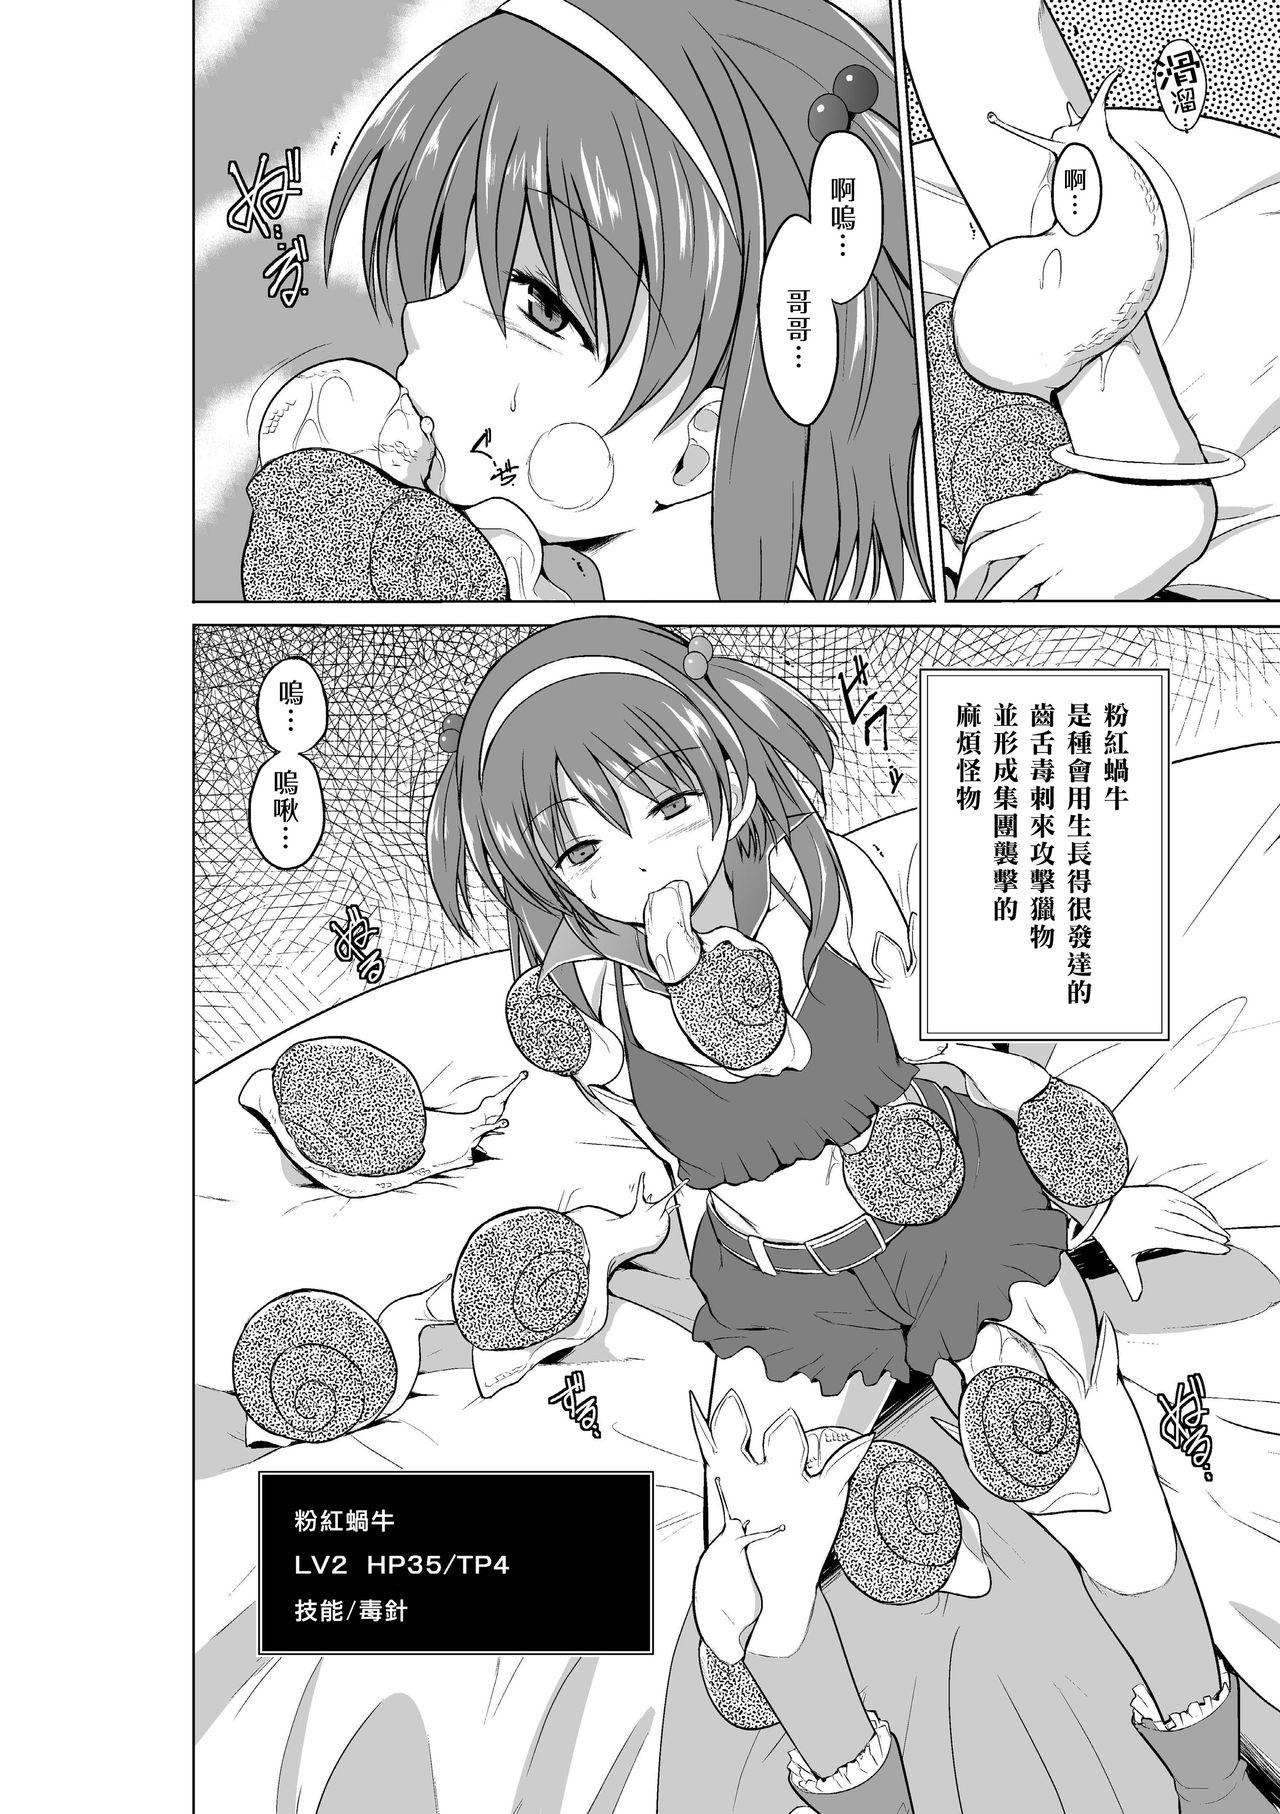 Masturbando Dungeon Travelers - Nanako no Himegoto - Toheart2 3some - Page 8